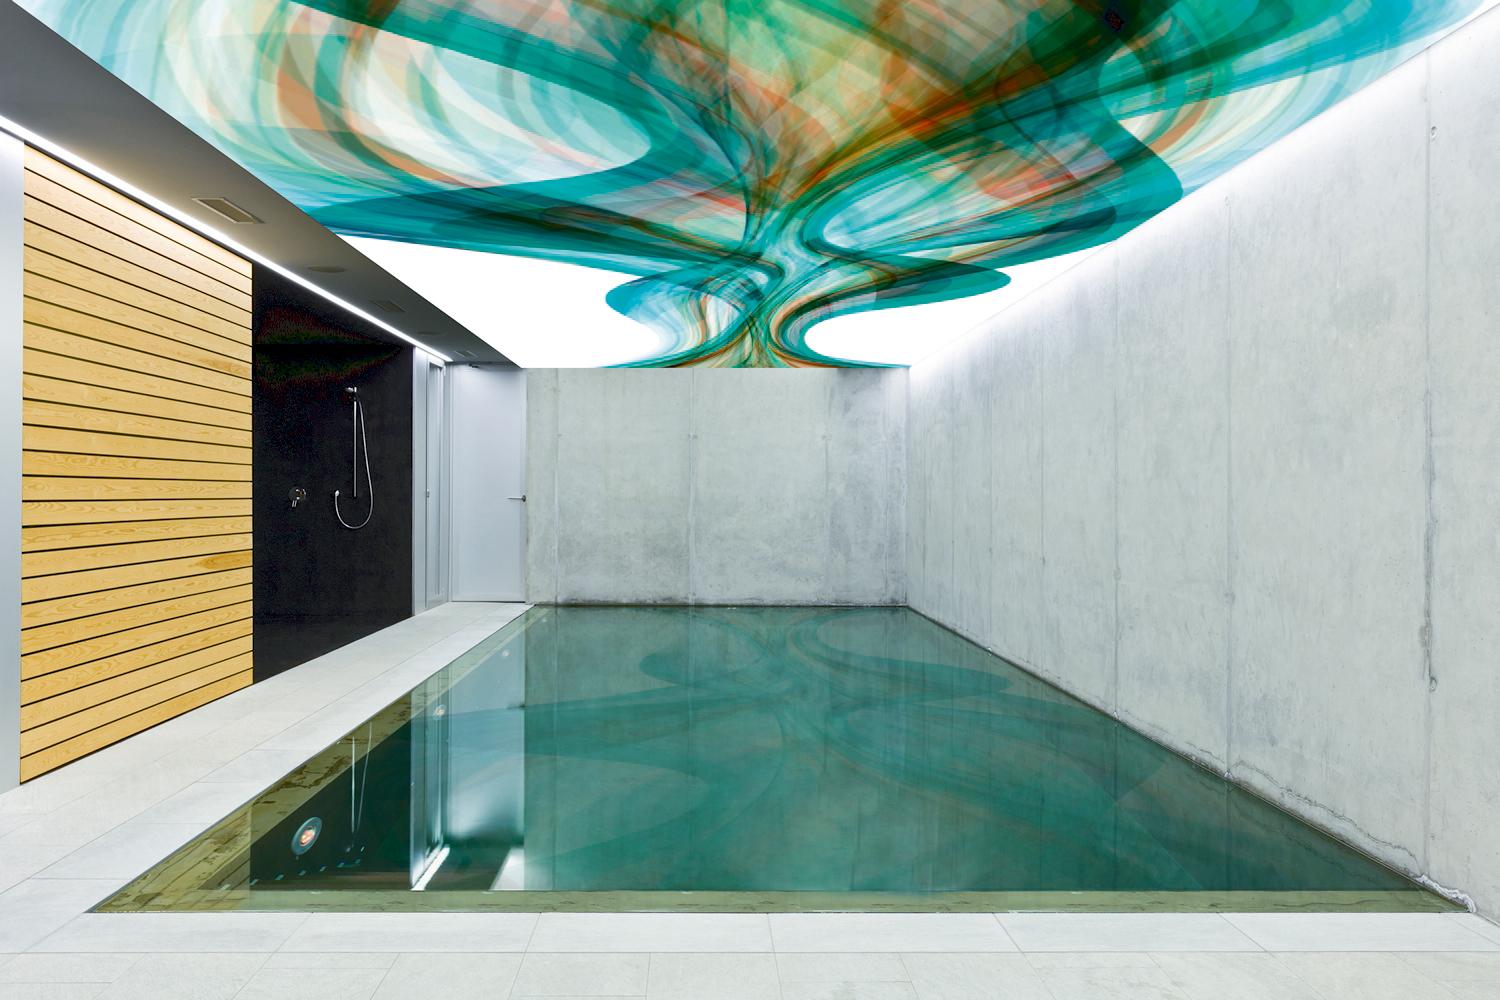 Beleuchtetes Deckenbild über dem Pool #deckengestaltung #deckenbild ©frescovision.de / K.Miroschnik